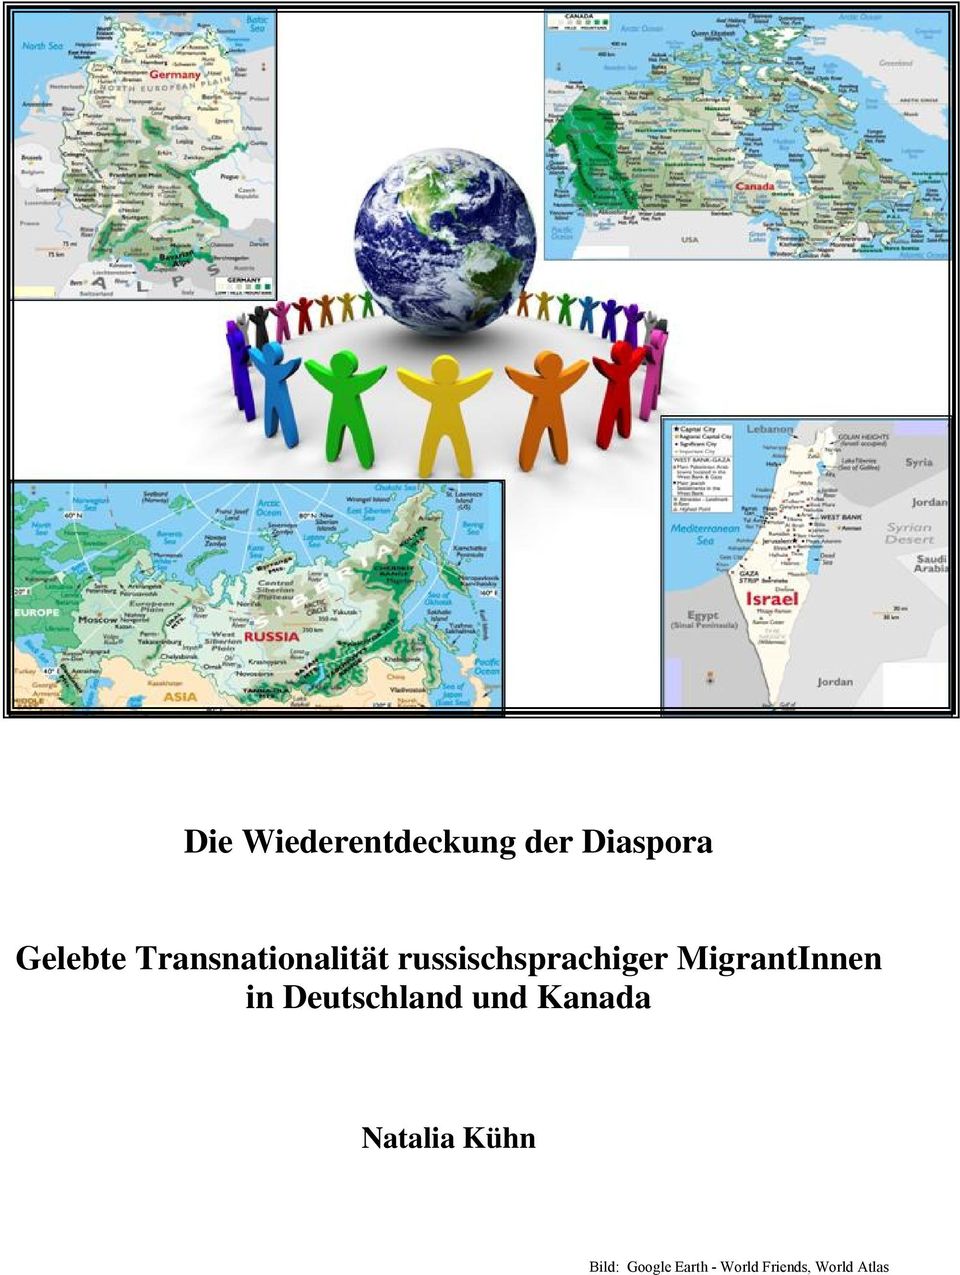 MigrantInnen in Deutschland und Kanada